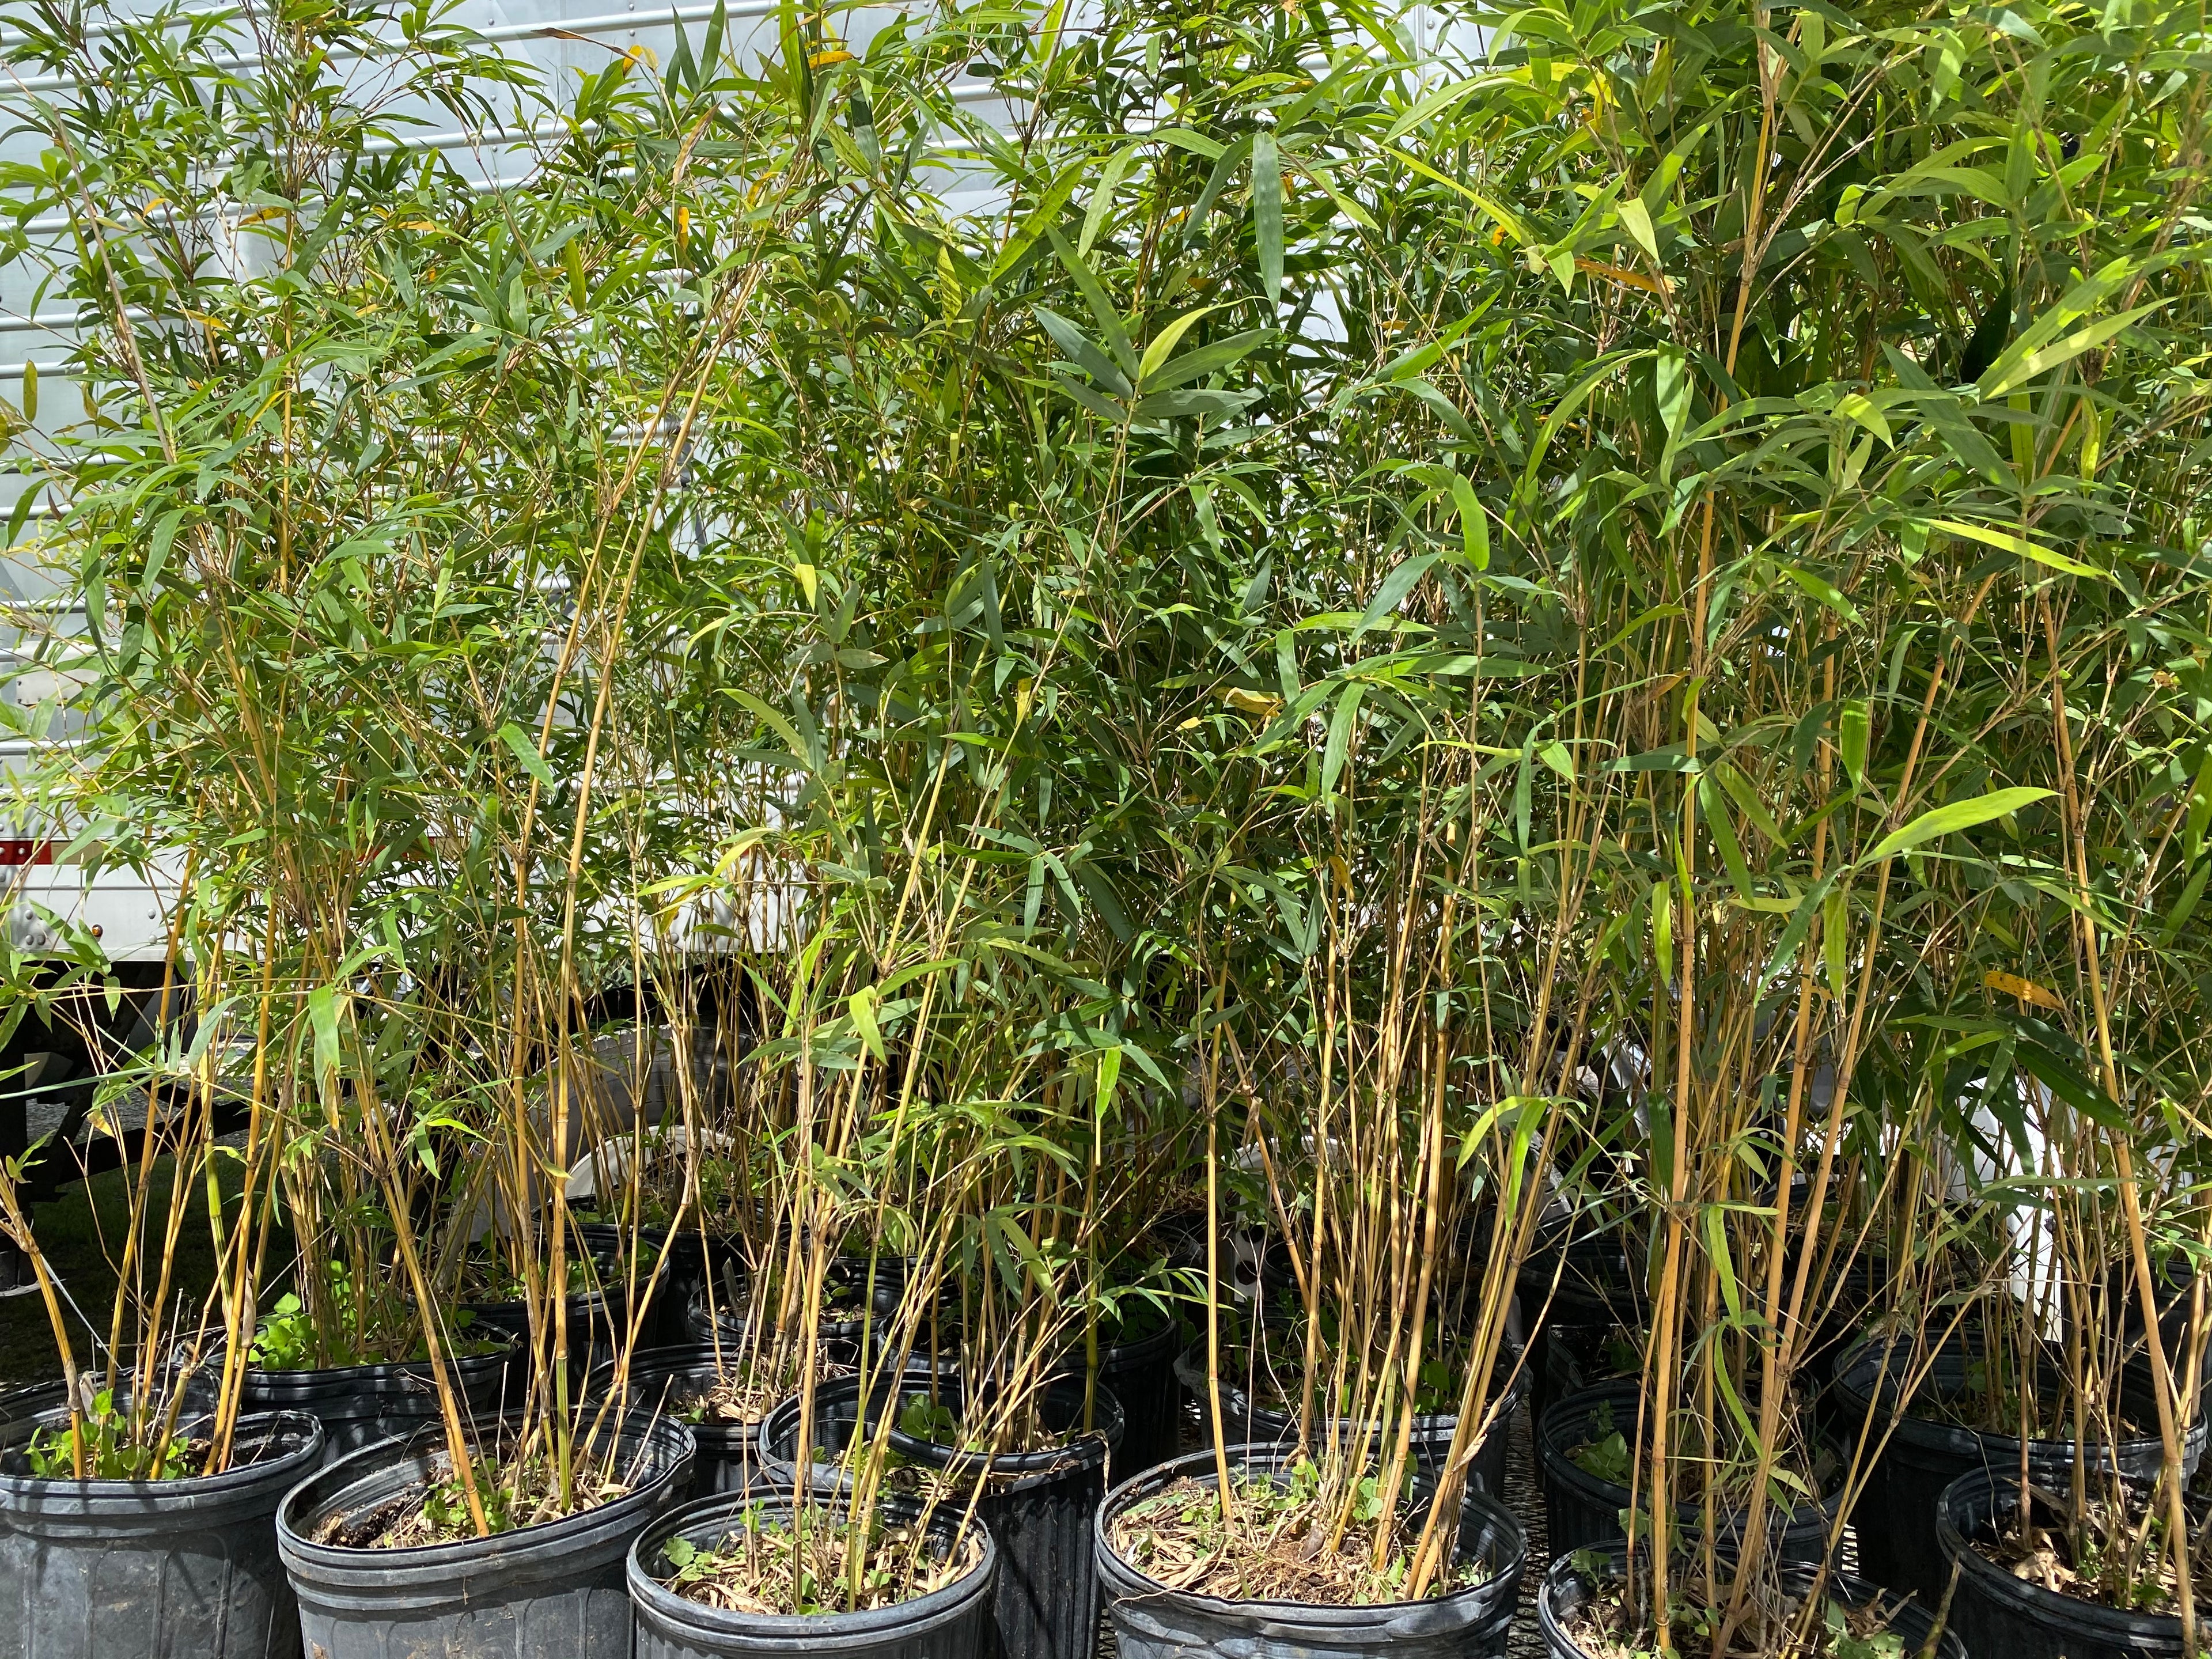 multiple Alphonse Karr Bamboo, Bambusa multiplex